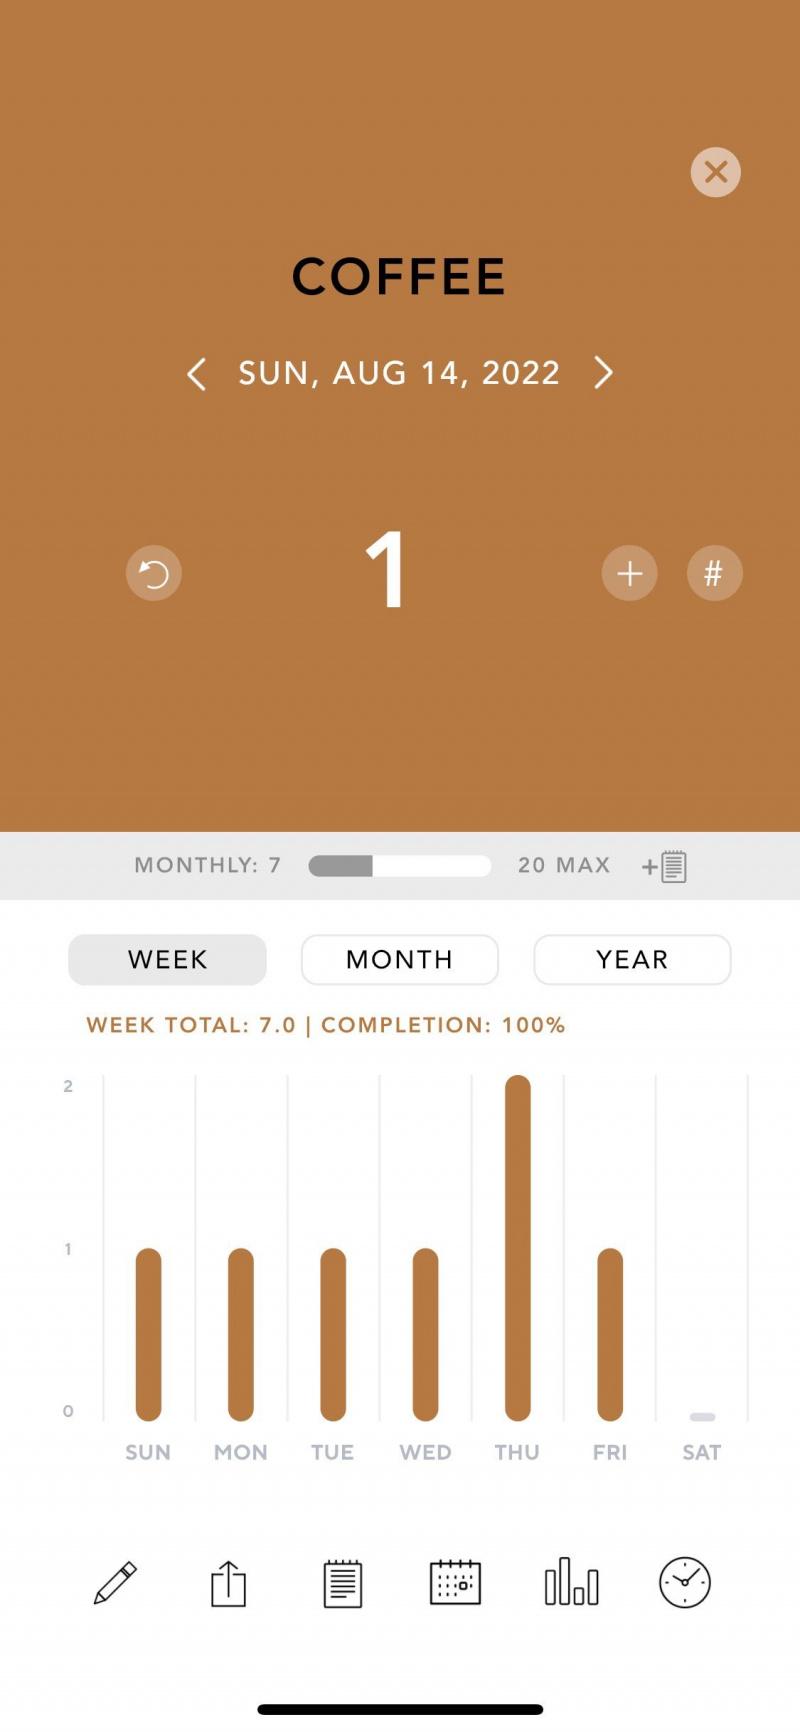   Skärmdump av appen Klar som visar exempel på målstrimma